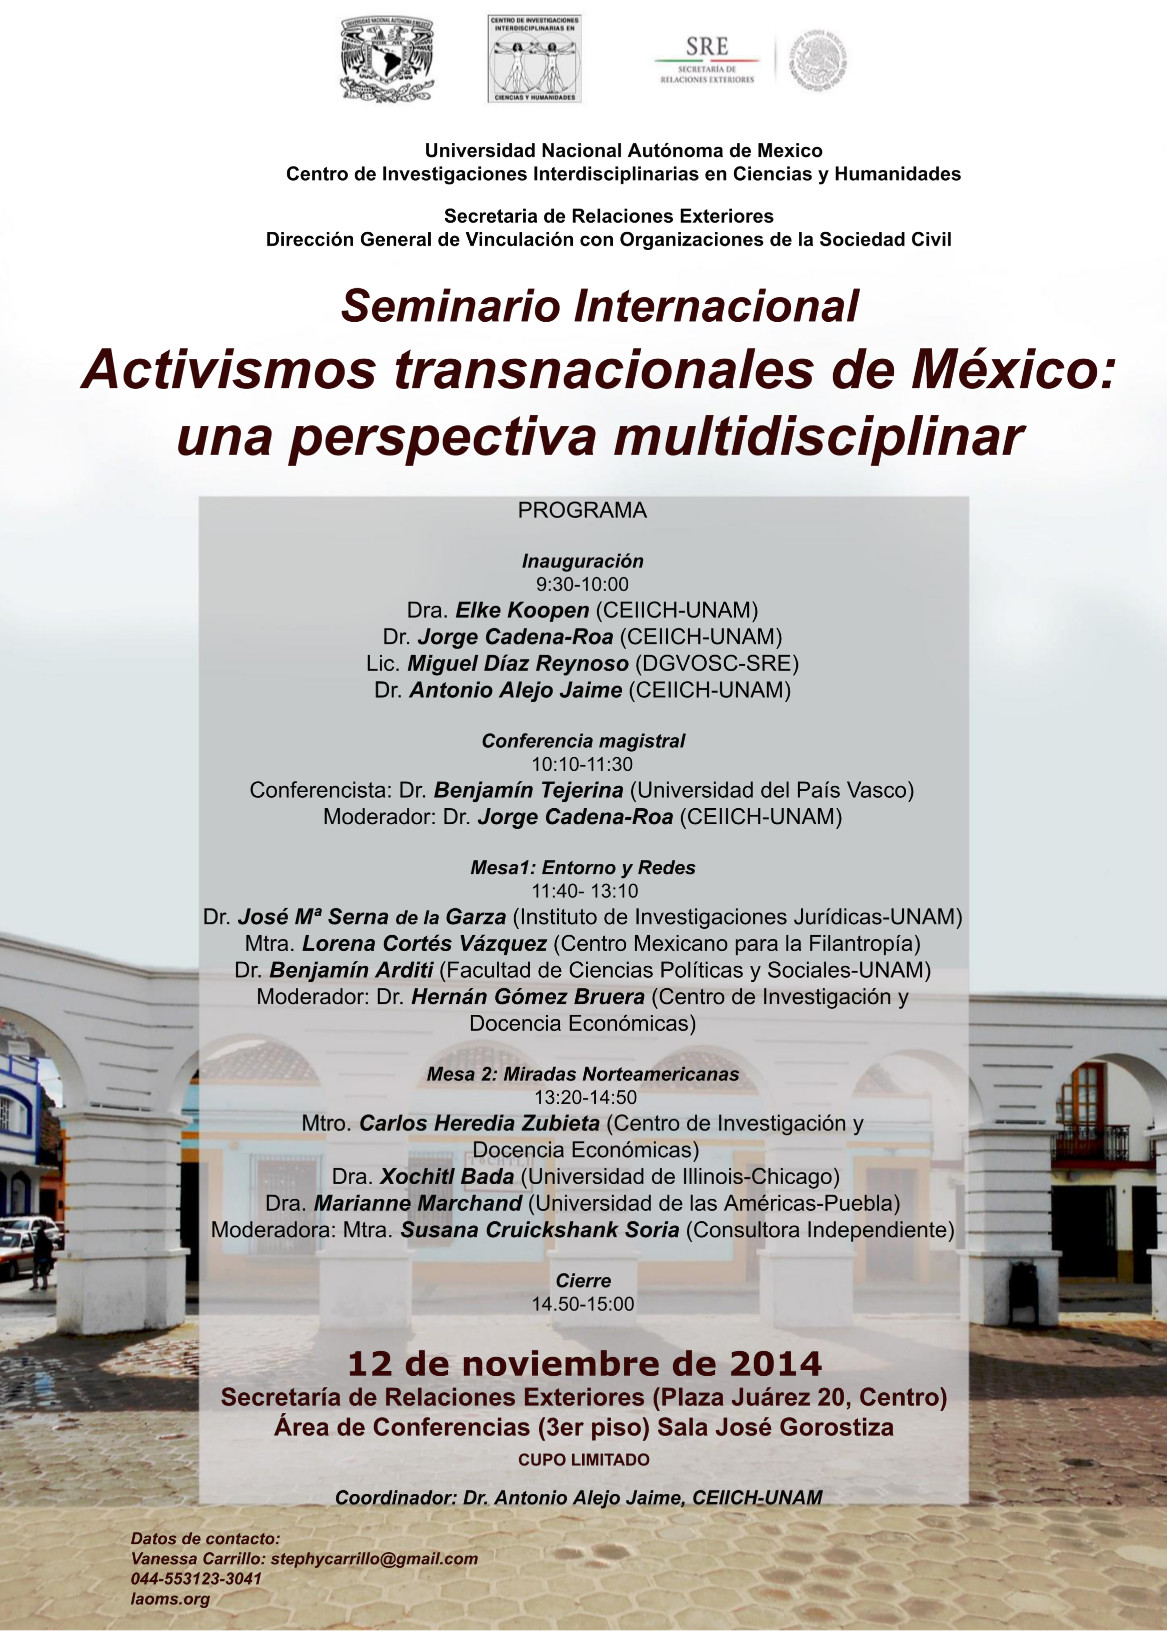  Activismos transnacionales de México UNAMCEIICH-SRE